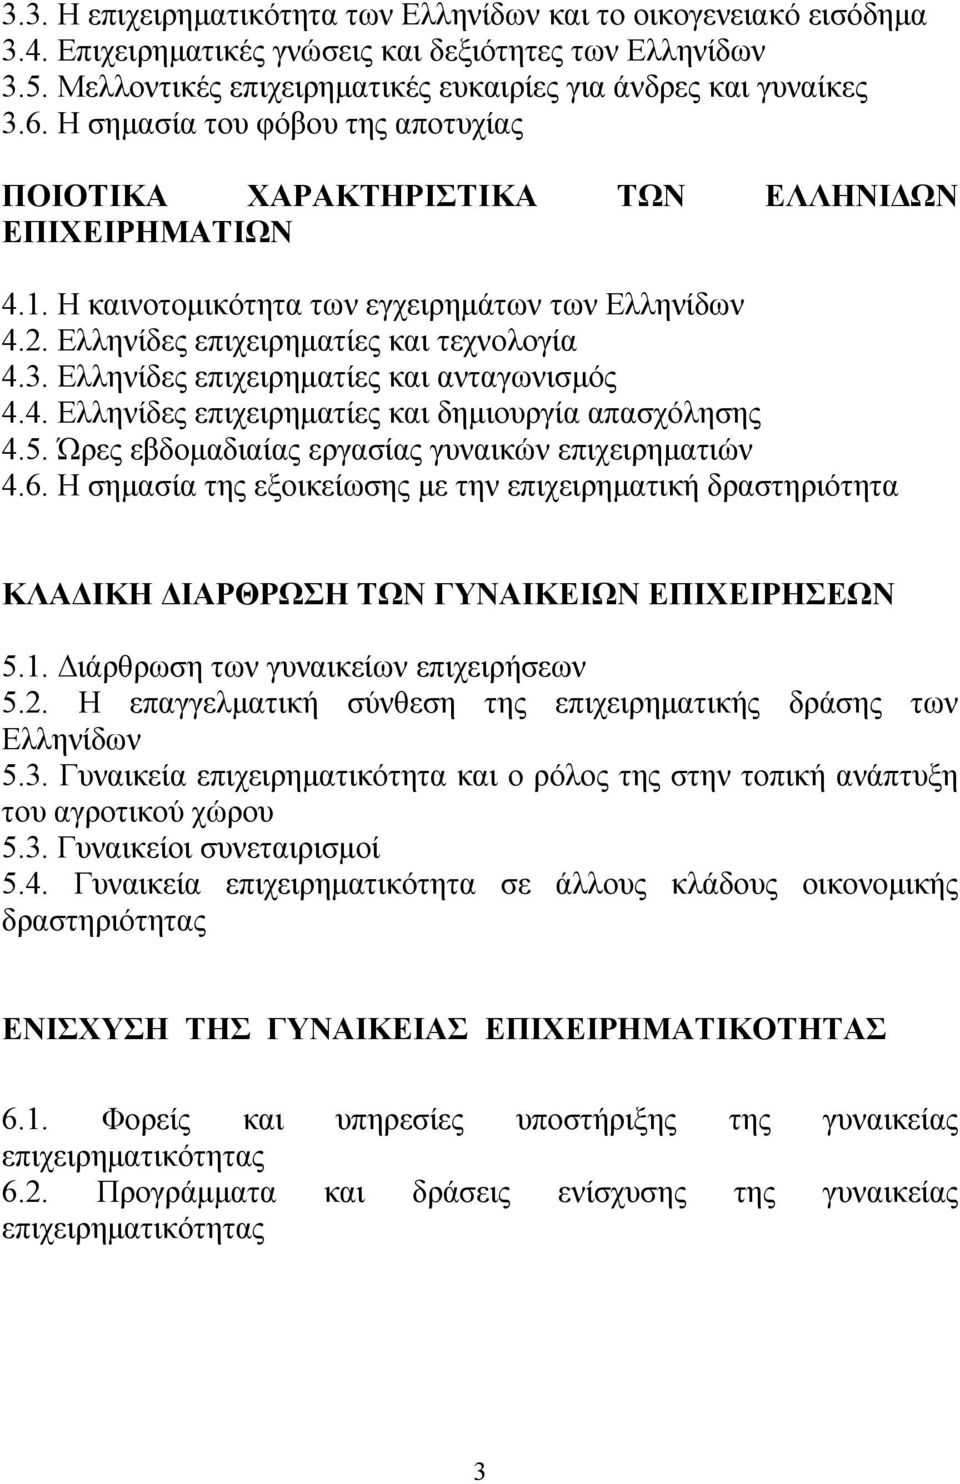 Ελληνίδες επιχειρηματίες και ανταγωνισμός 4.4. Ελληνίδες επιχειρηματίες και δημιουργία απασχόλησης 4.5. Ώρες εβδομαδιαίας εργασίας γυναικών επιχειρηματιών 4.6.